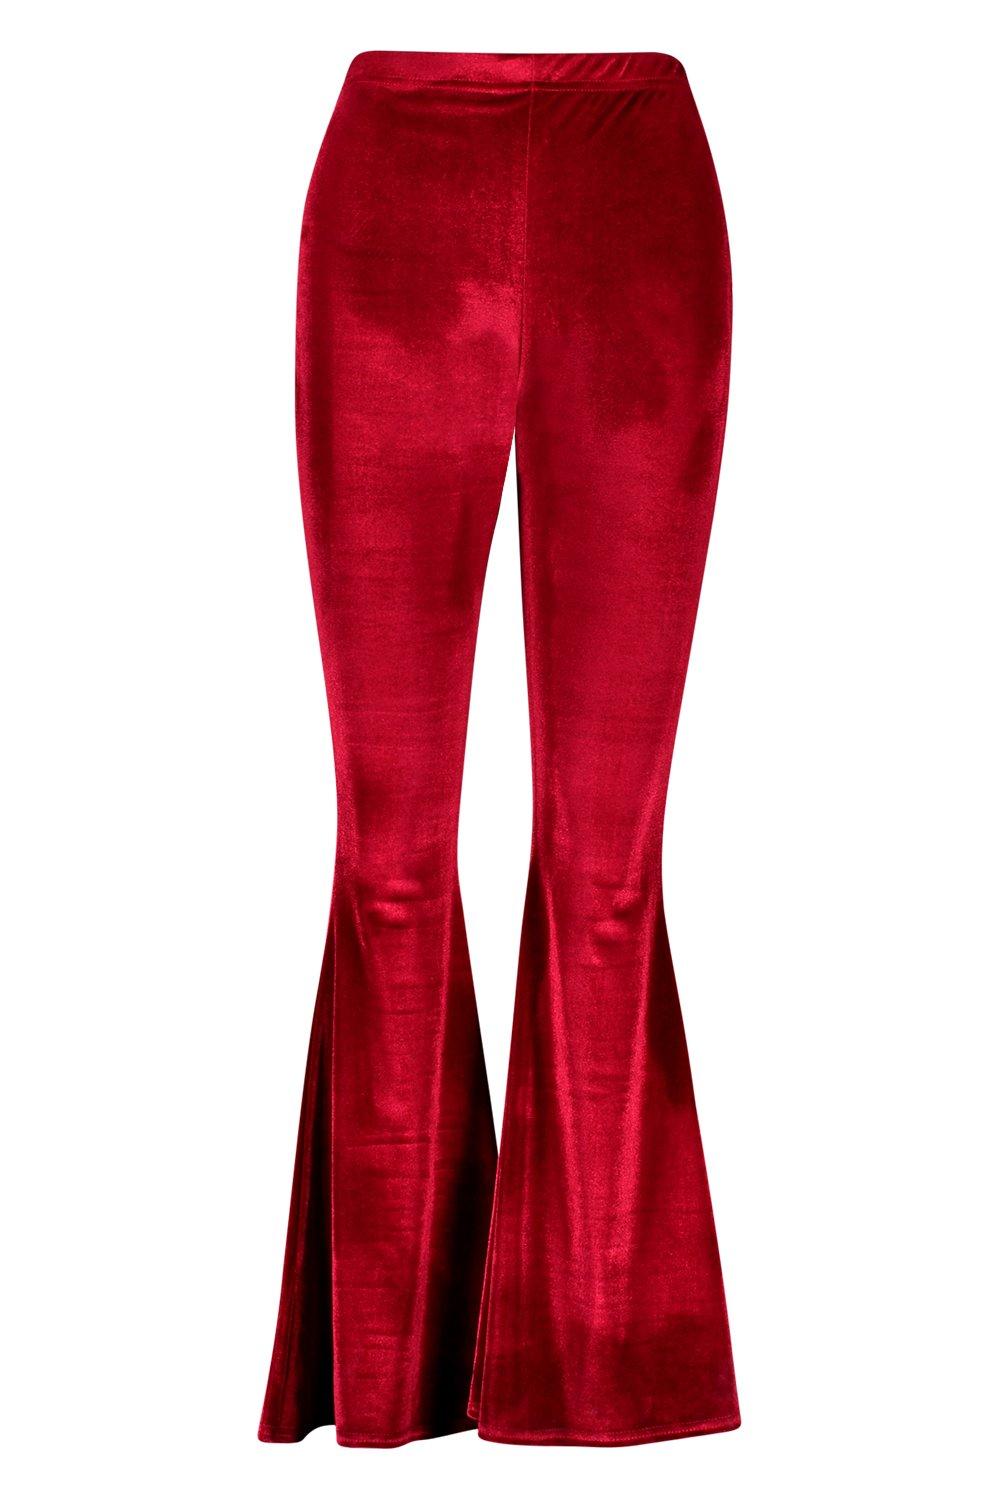 velvet red pants